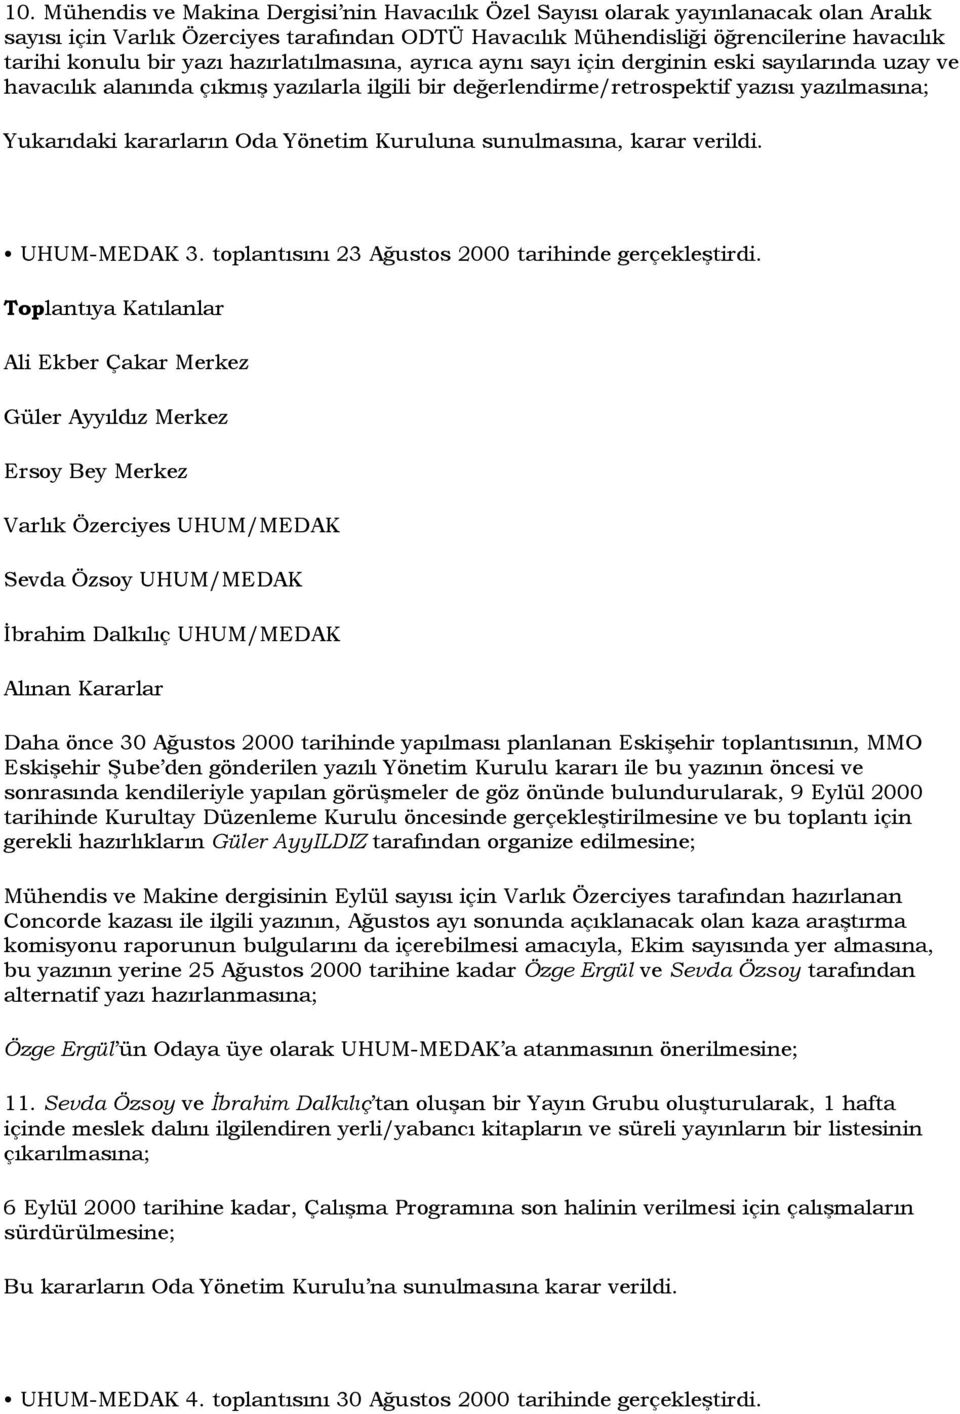 Yönetim Kuruluna sunulmasına, karar verildi. UHUM-MEDAK 3. toplantısını 23 Ağustos 2000 tarihinde gerçekleştirdi.